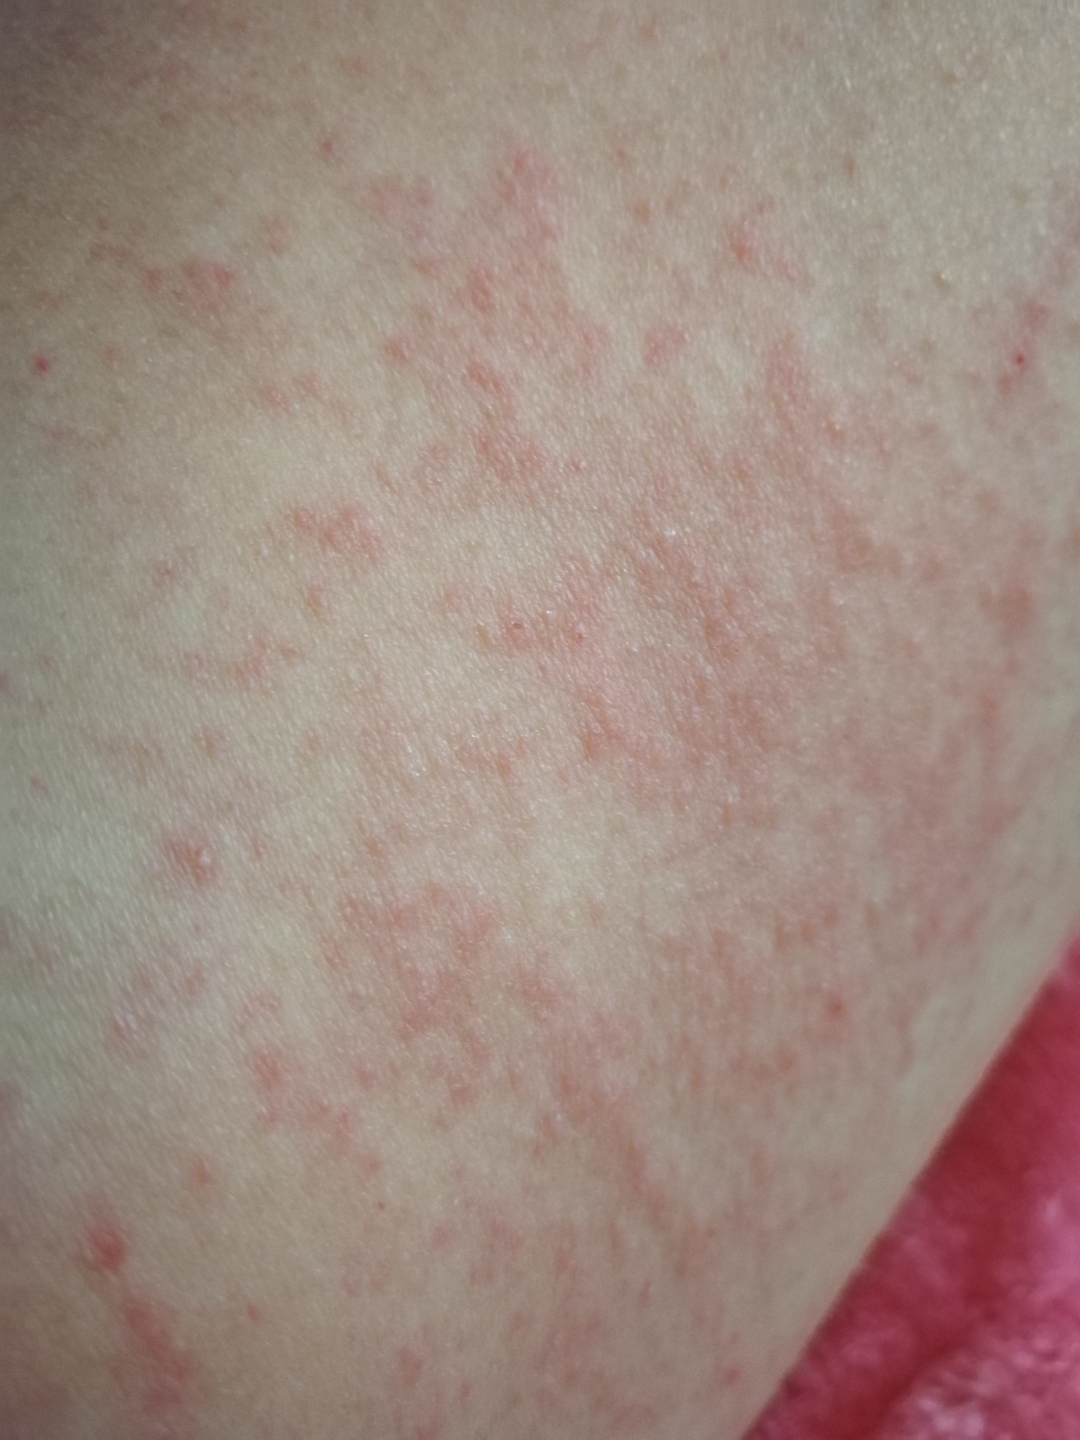 1,病情分析:湿疹是一种过敏性皮肤病,瘙痒是其主要症状之一